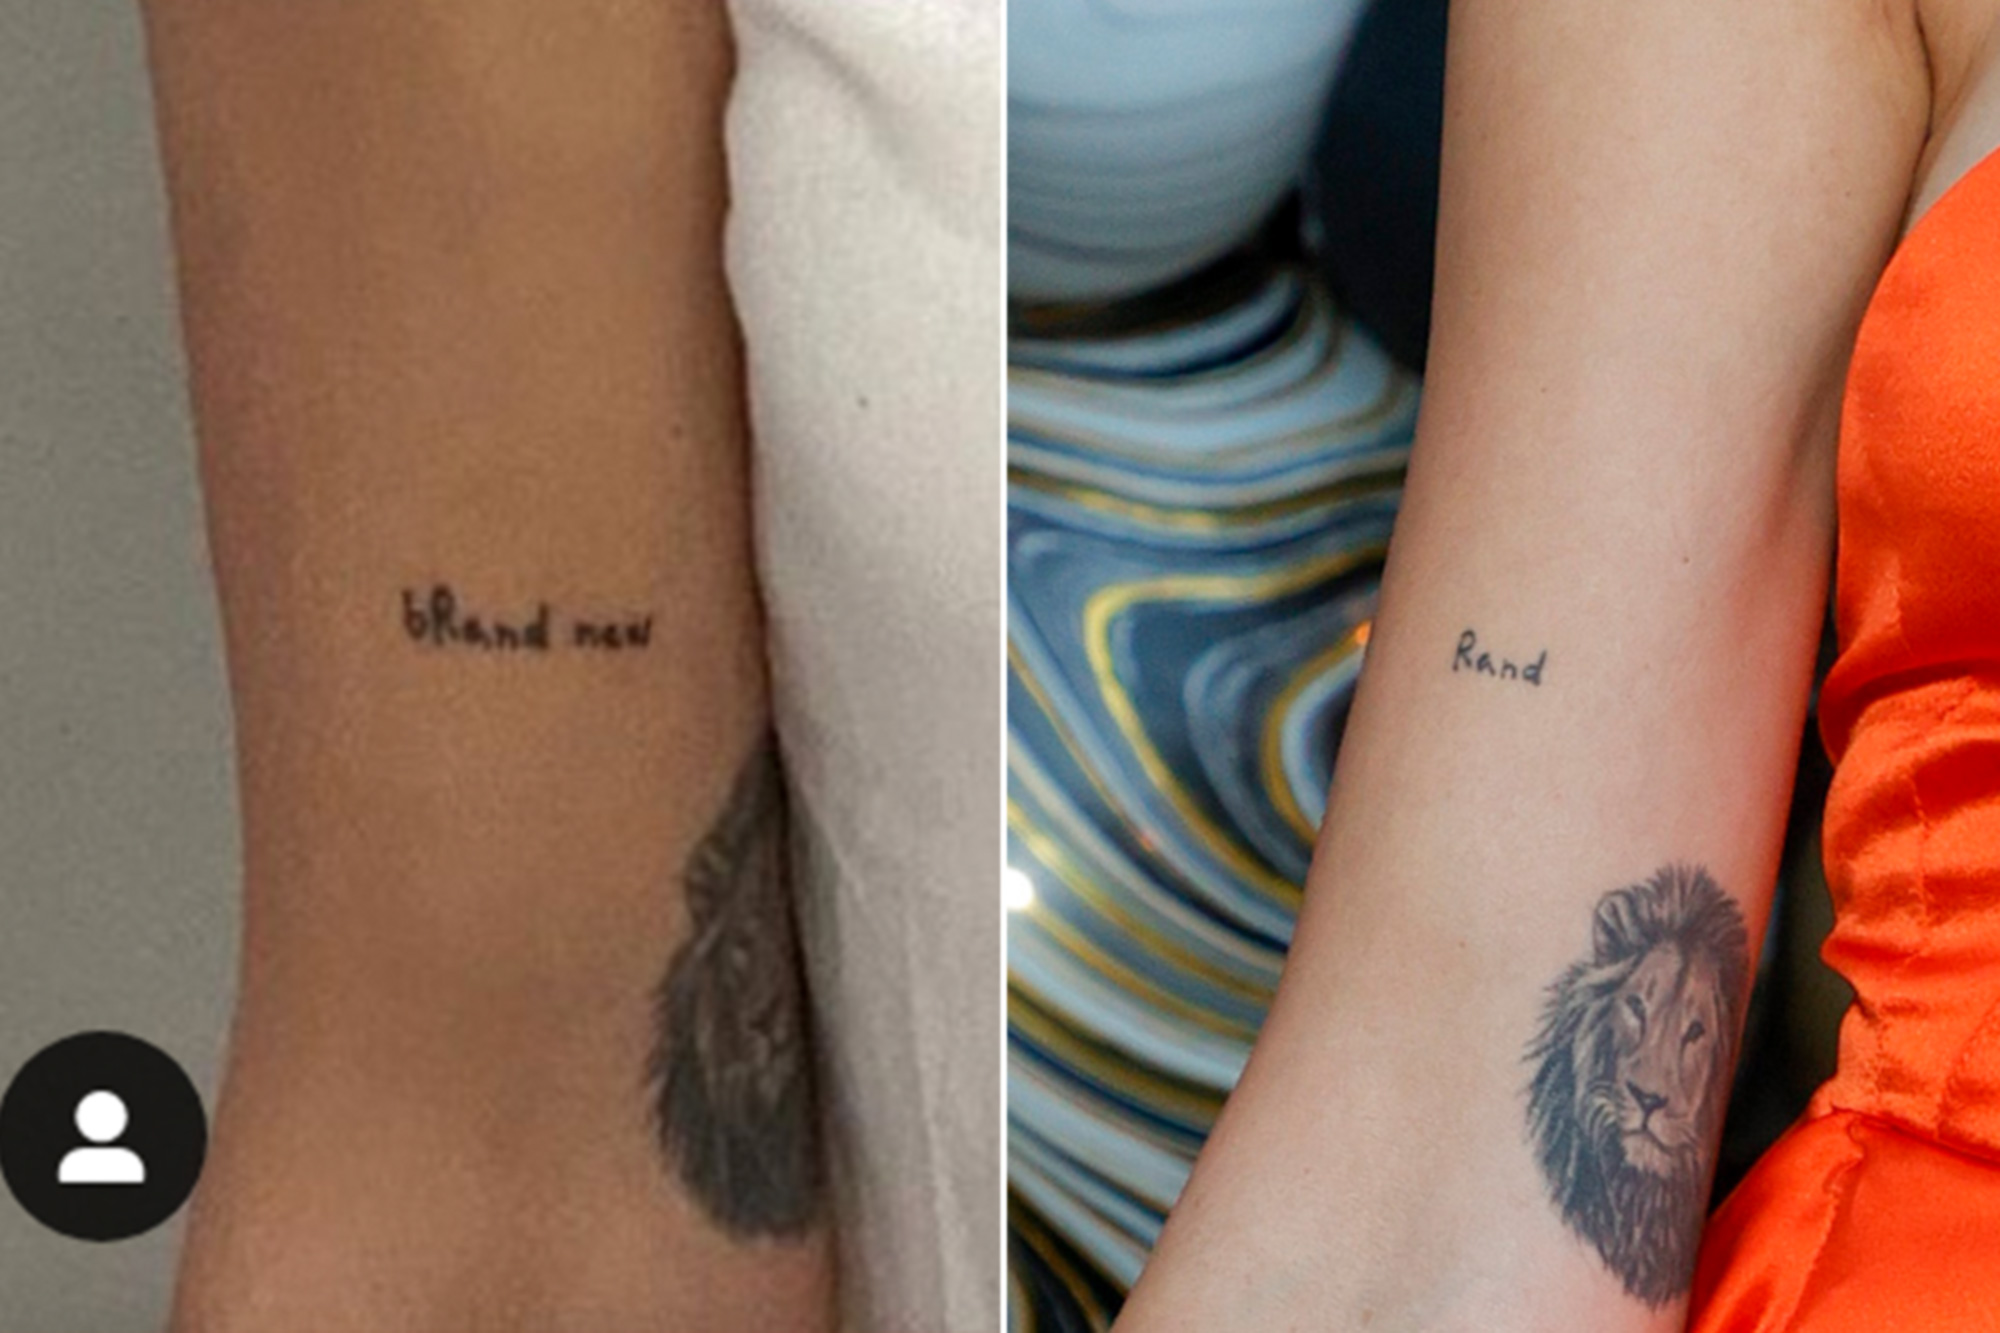 Lala Kent changes 'Rand' tattoo to 'bRand New' amid Randall Emmett split